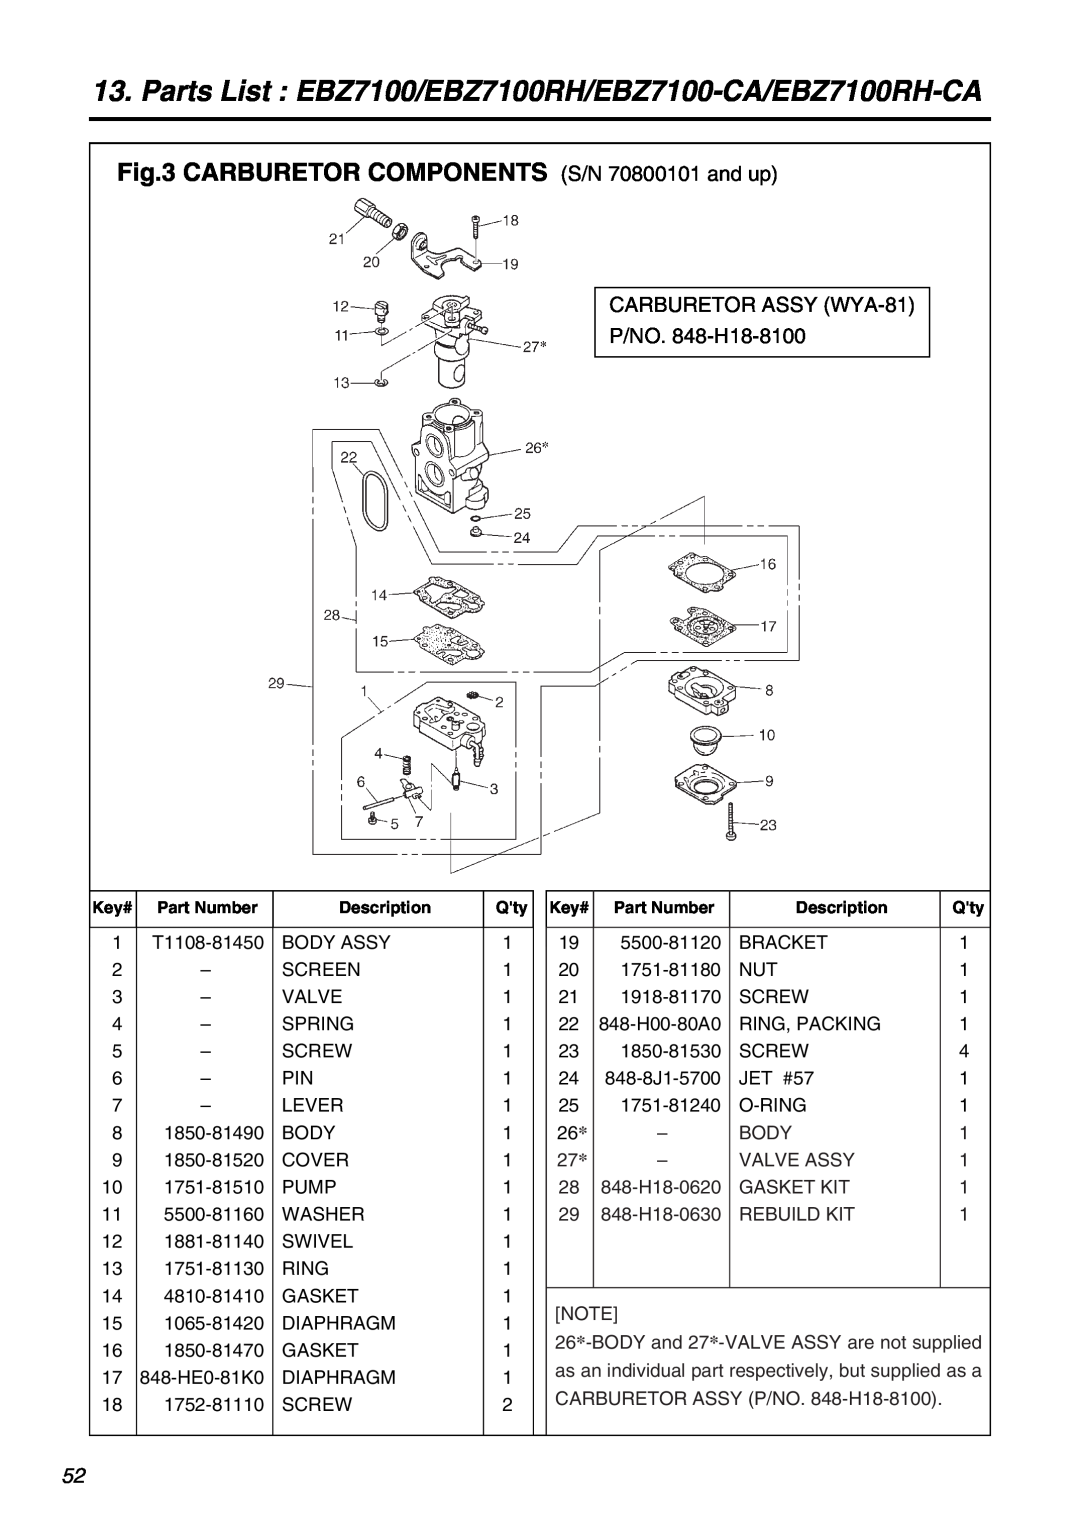 RedMax manual CARBURETOR COMPONENTS S/N 70800101 and up, Parts List EBZ7100/EBZ7100RH/EBZ7100-CA/EBZ7100RH-CA 